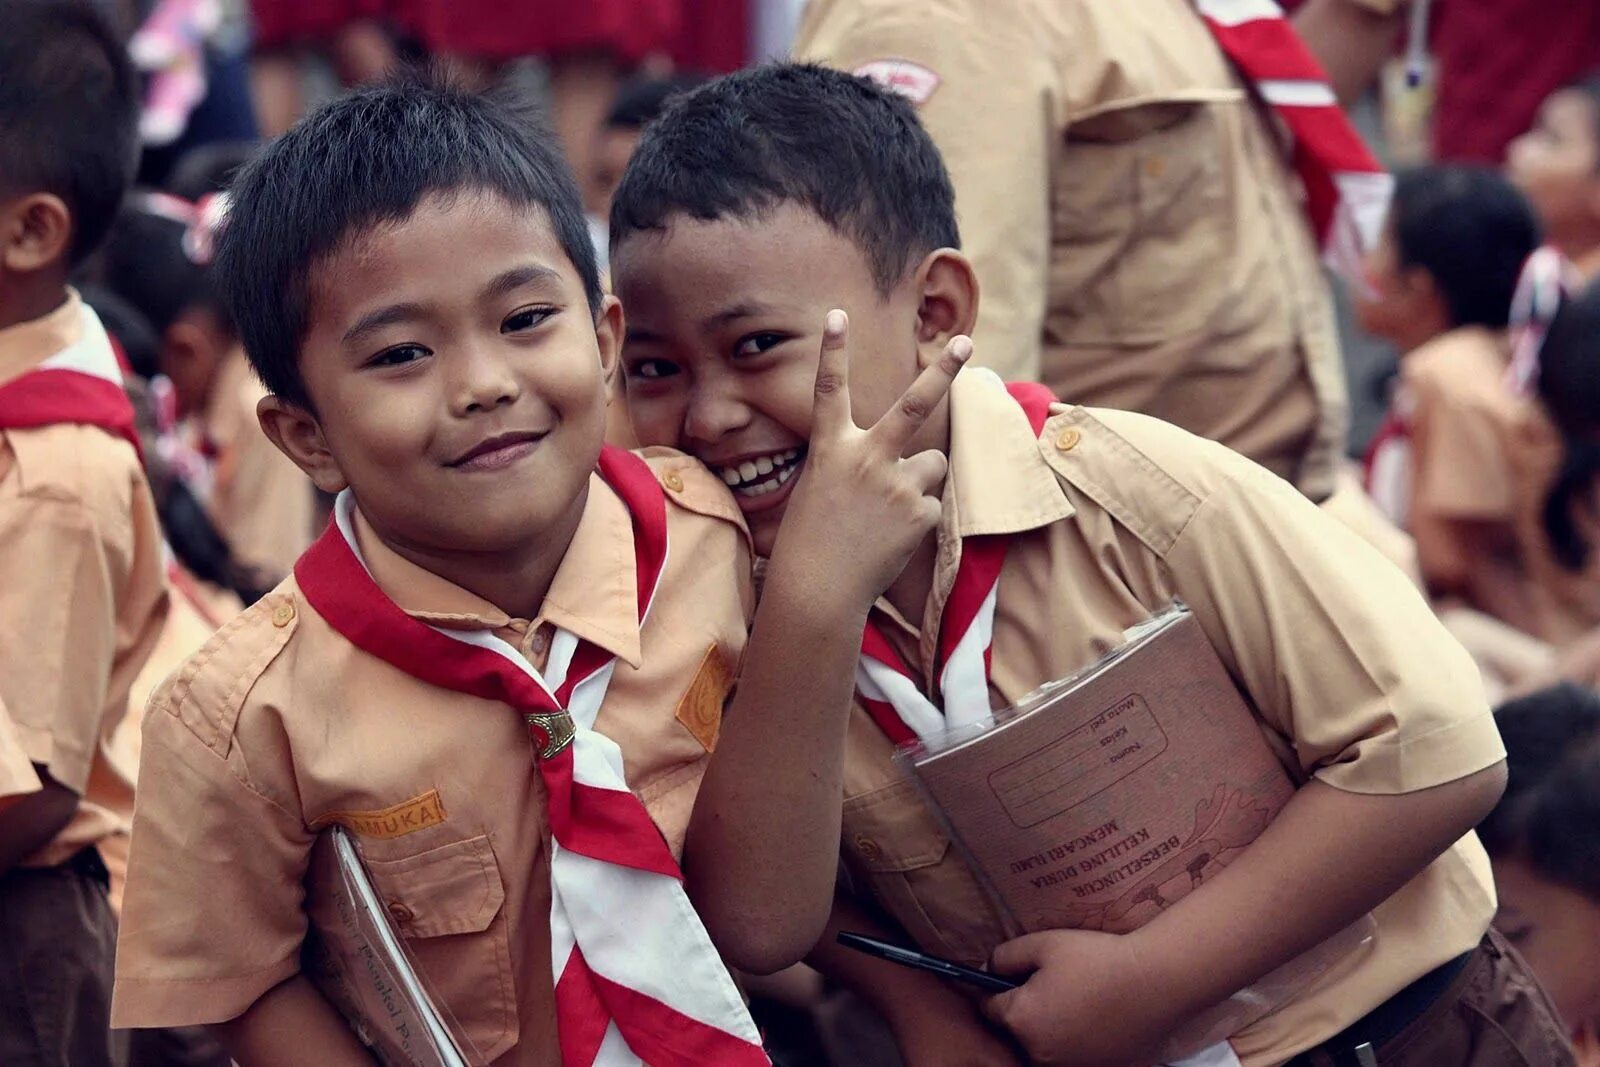 Video orang indonesia. Индонезийская студентка. Мальчик индонезийка студент. Английский язык в Индонезии.